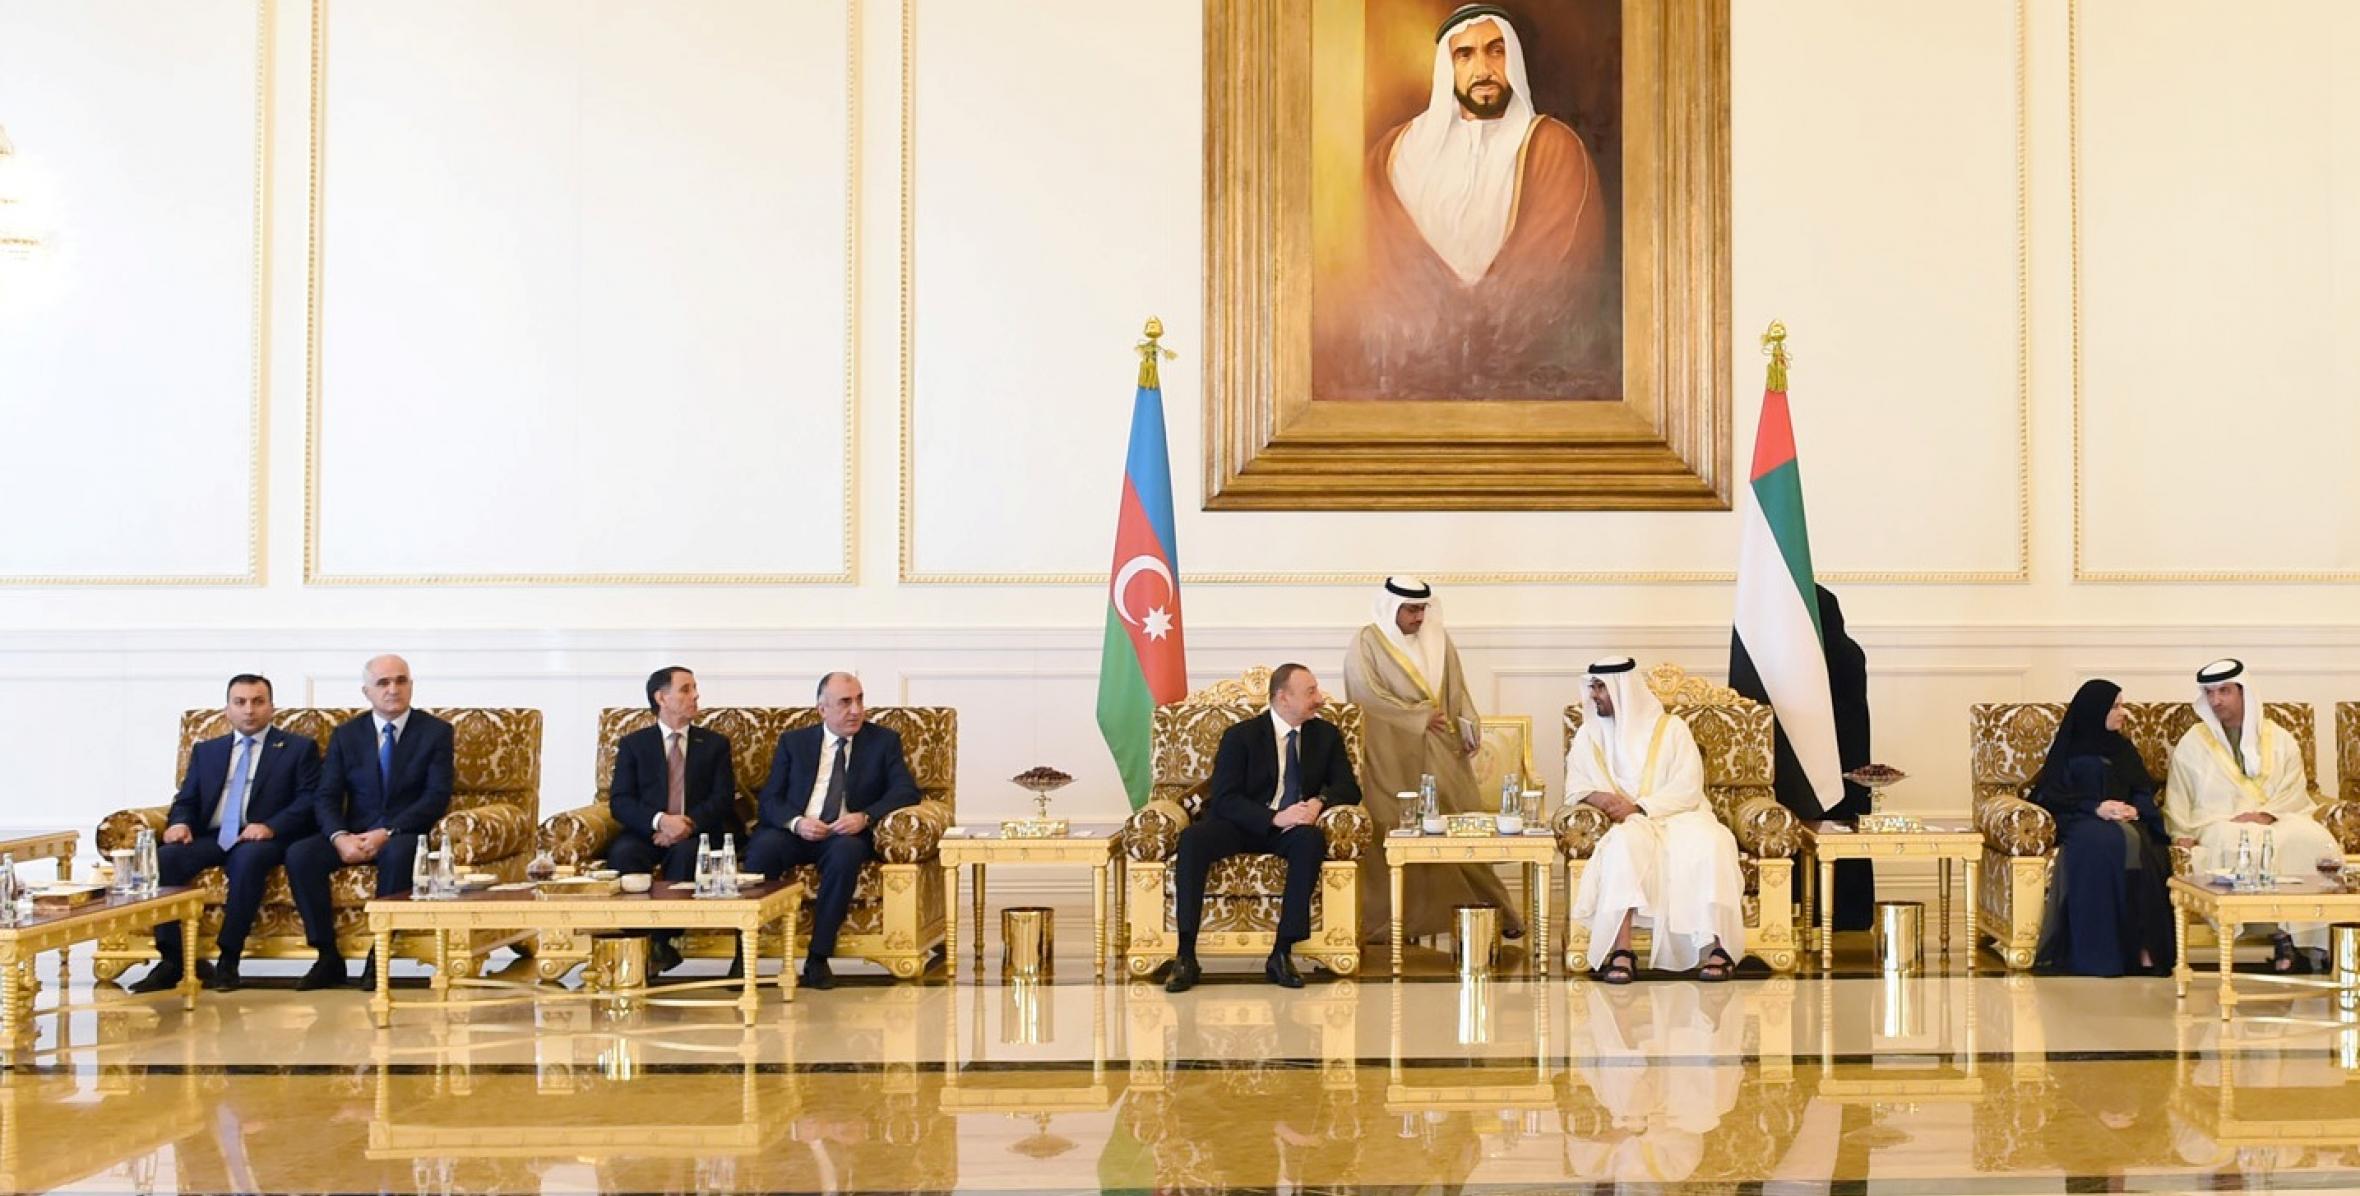 Состоялась встреча Ильхама Алиева с Наследным принцем Абу-Даби, заместителем Верховного главнокомандующего Вооруженными силами Объединенных Арабских Эмиратов шейхом Мухаммедом бен Заидом Аль Нахайяном в расширенном составе